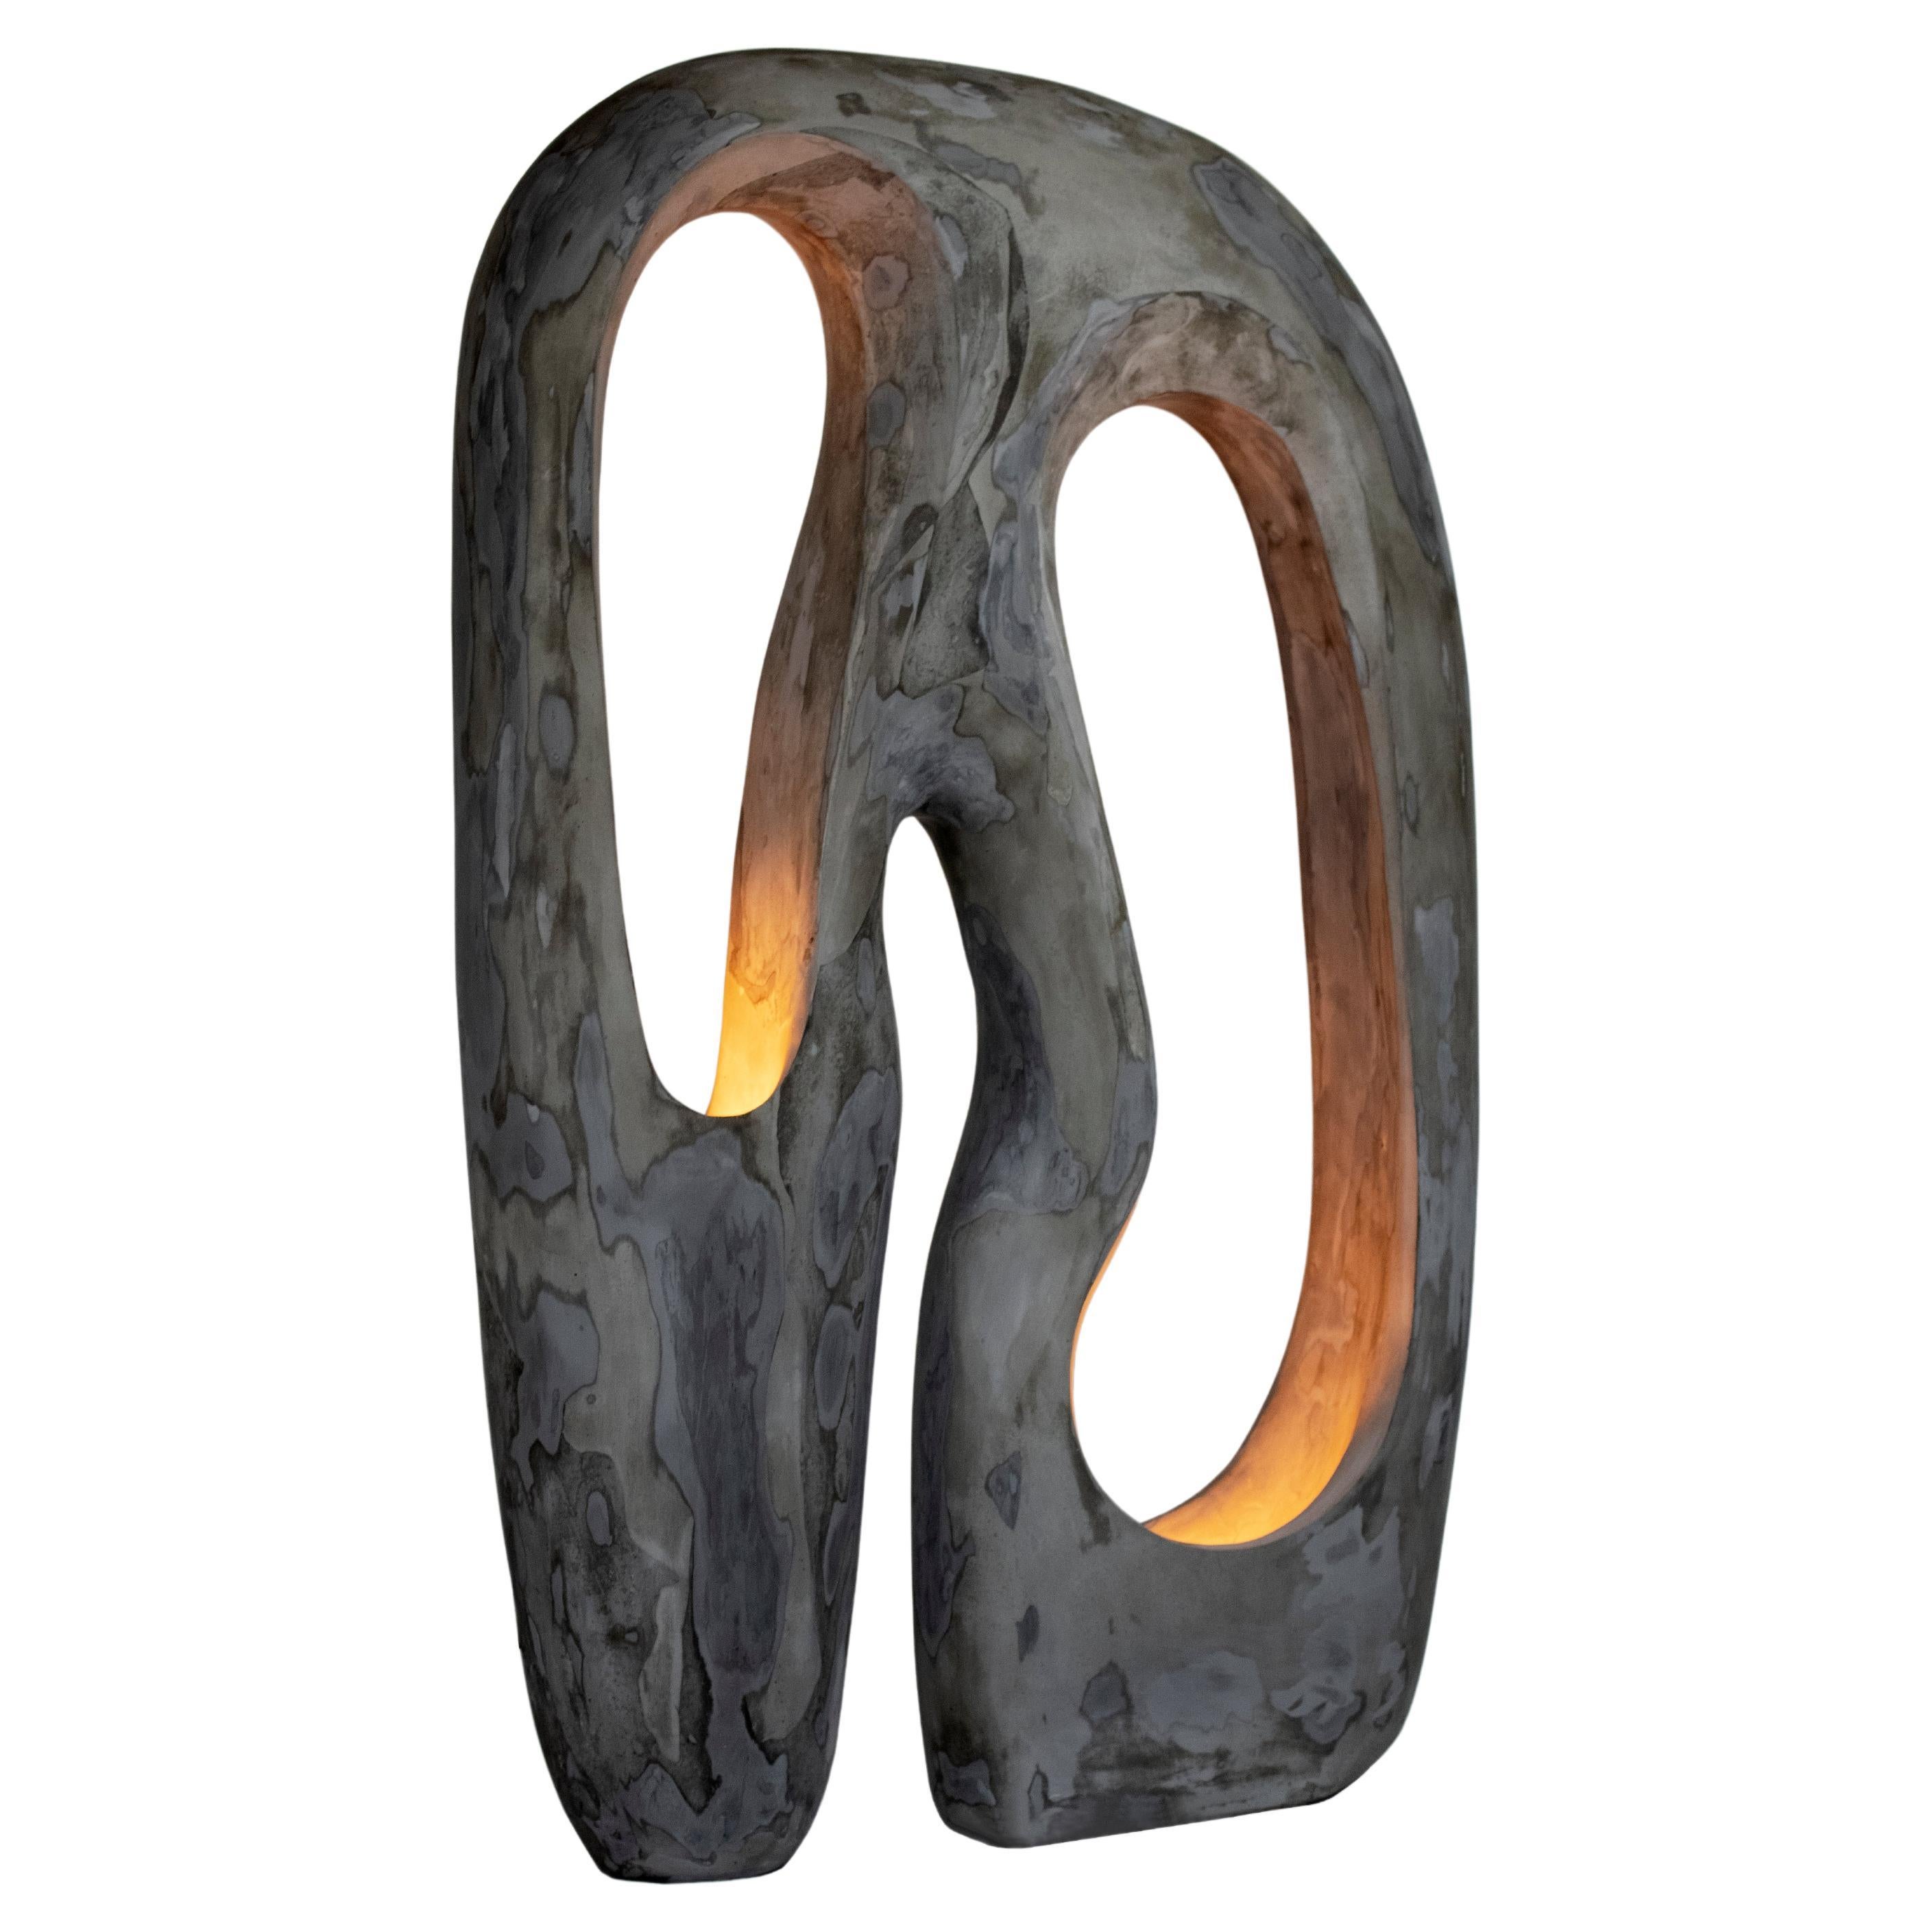 Zeitgenössische skulpturale Stehlampe „Longing“ von AOAO, organisches Sammlerstück